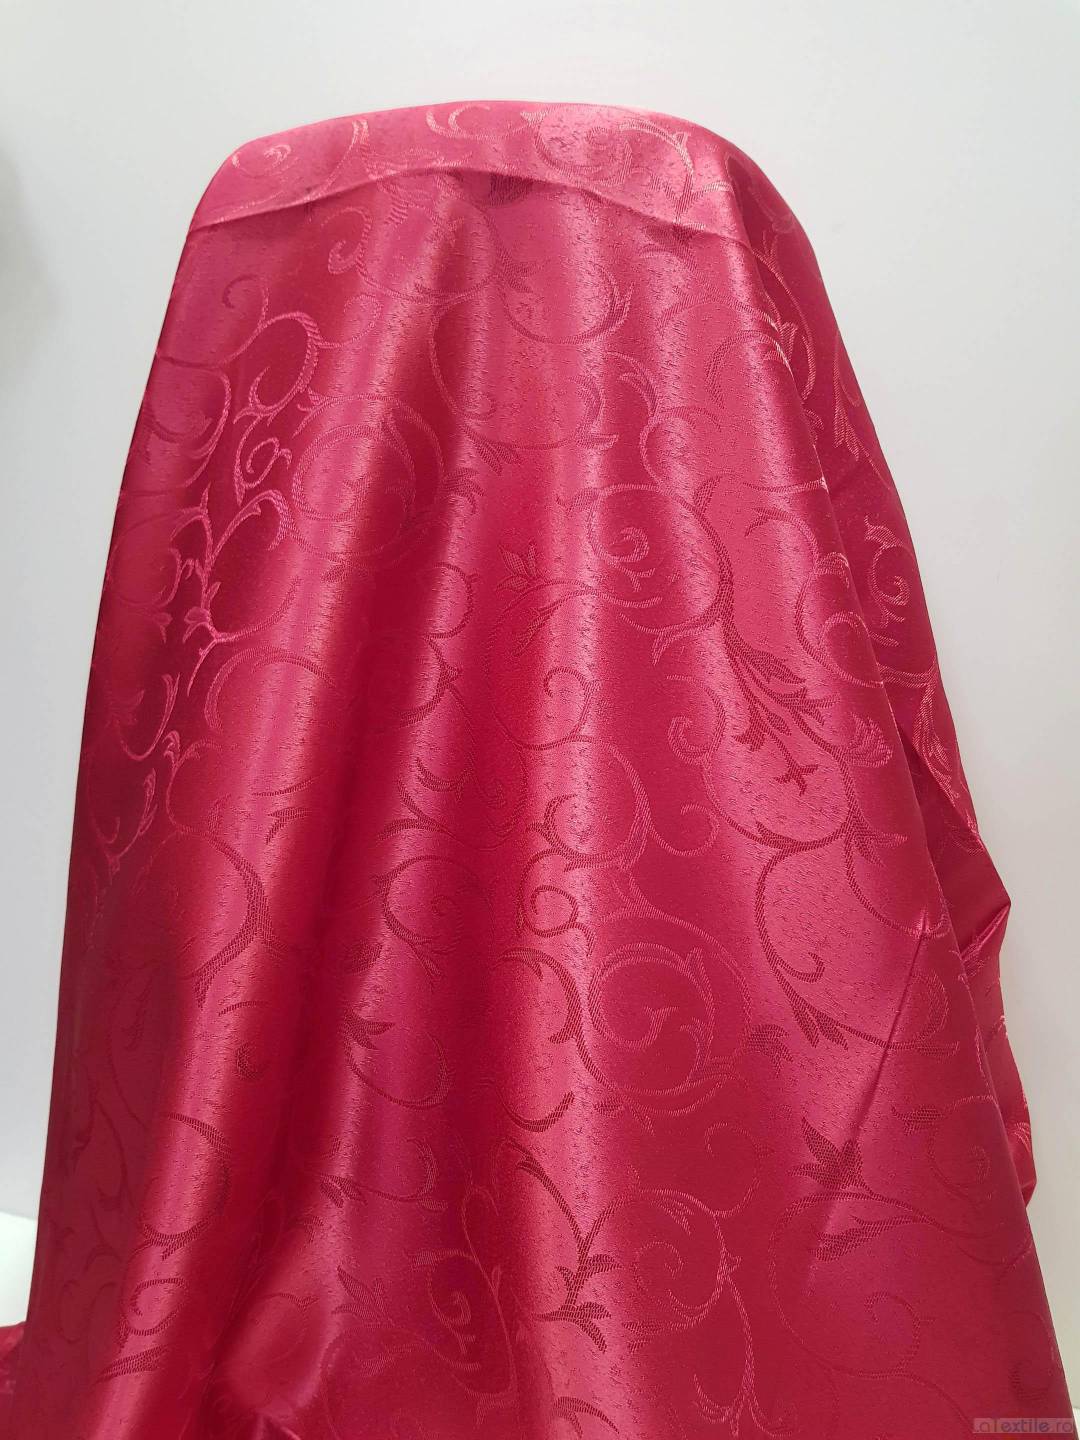 Material draperie rosu cu contur ramurele